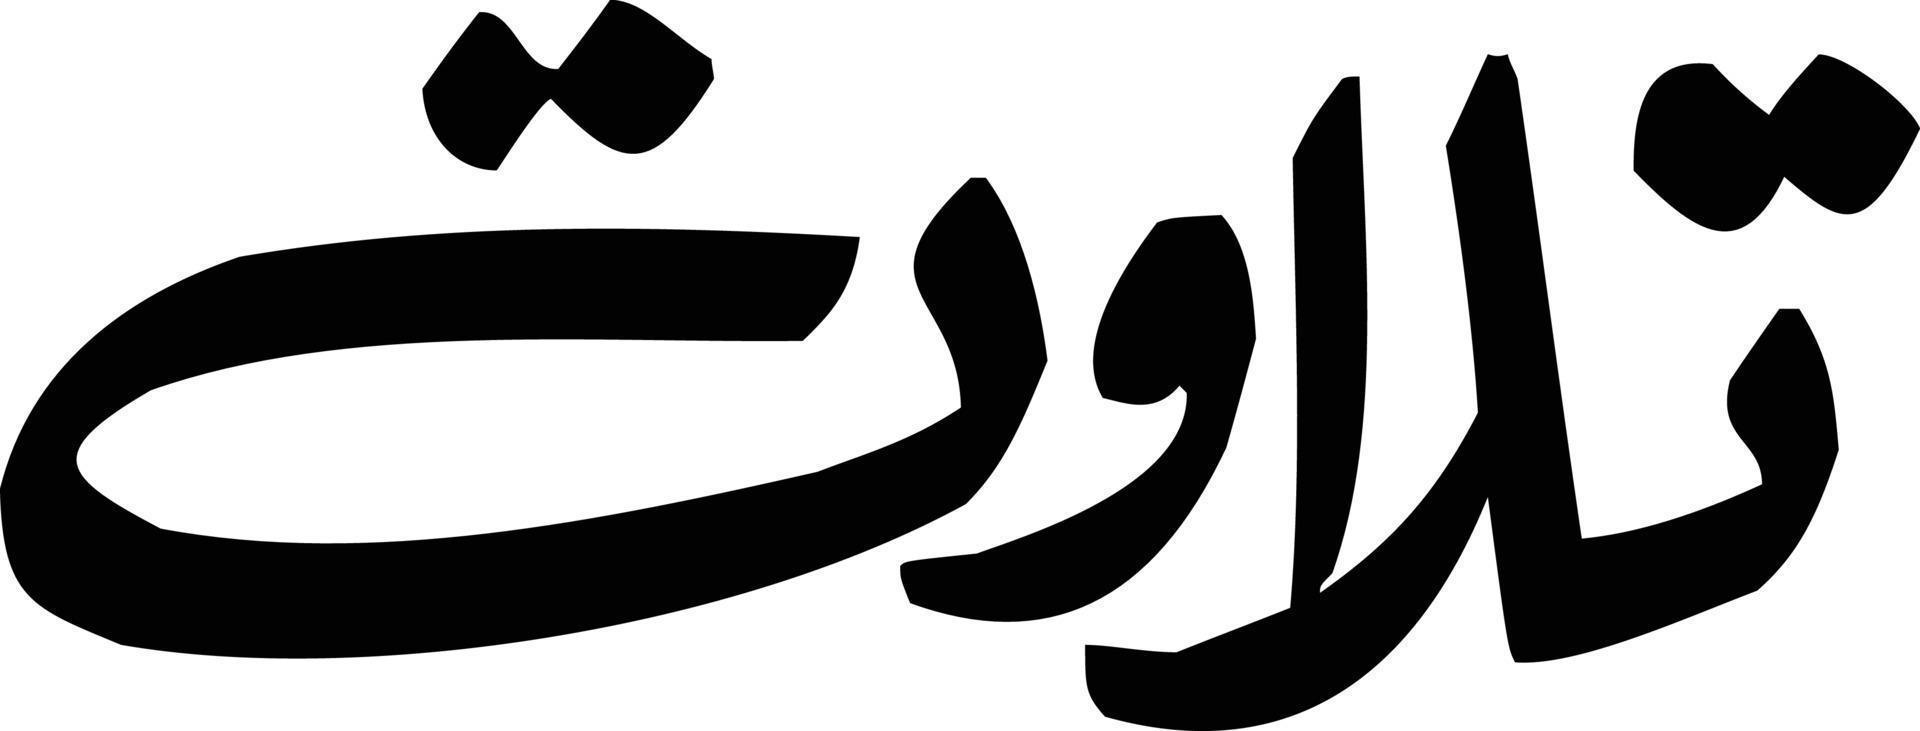 tilawat caligrafía islámica vector libre